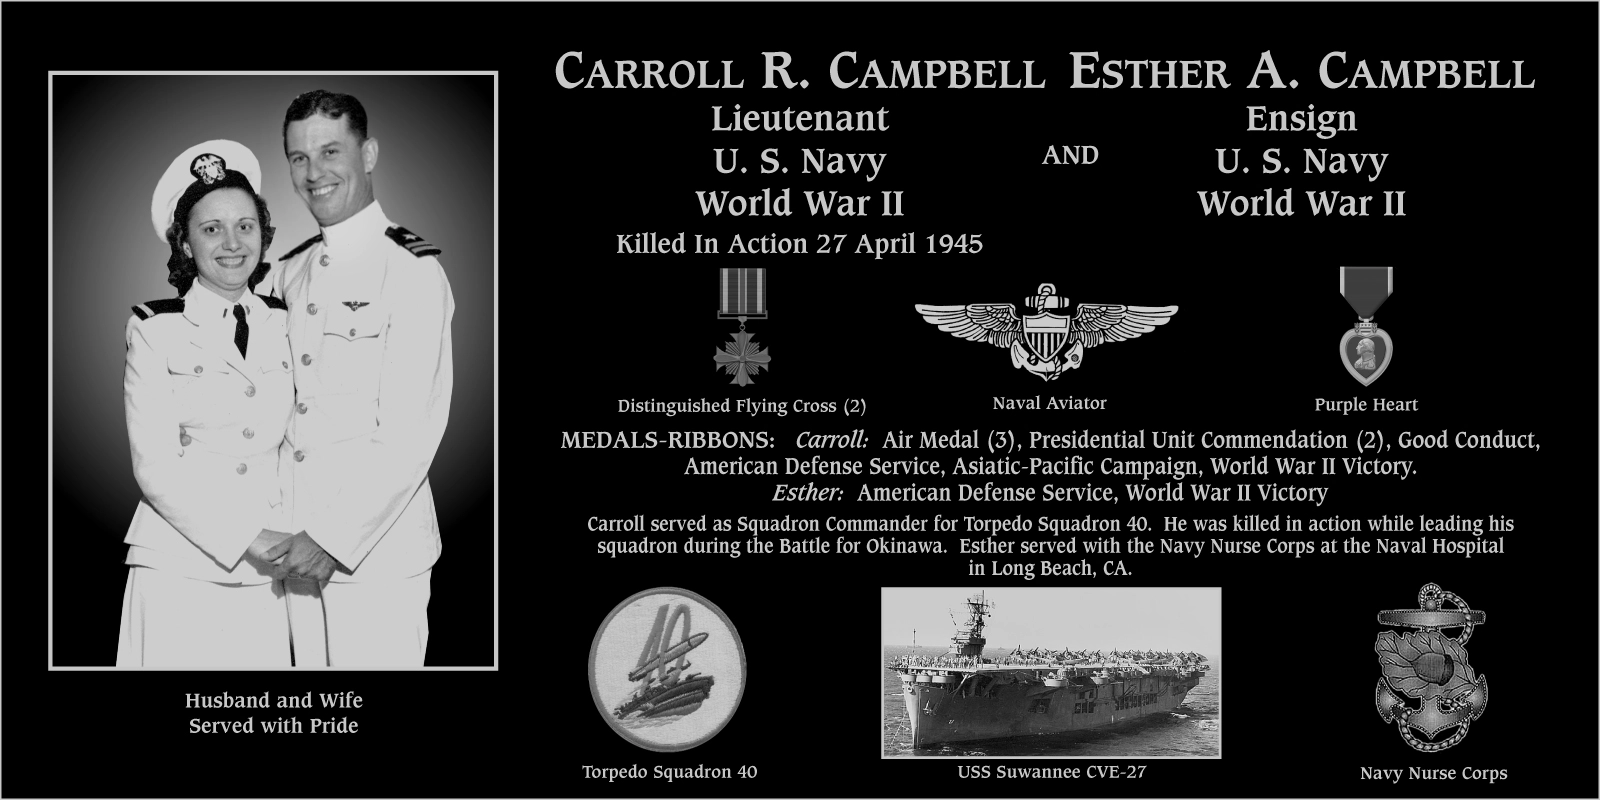 Carroll R. Campbell